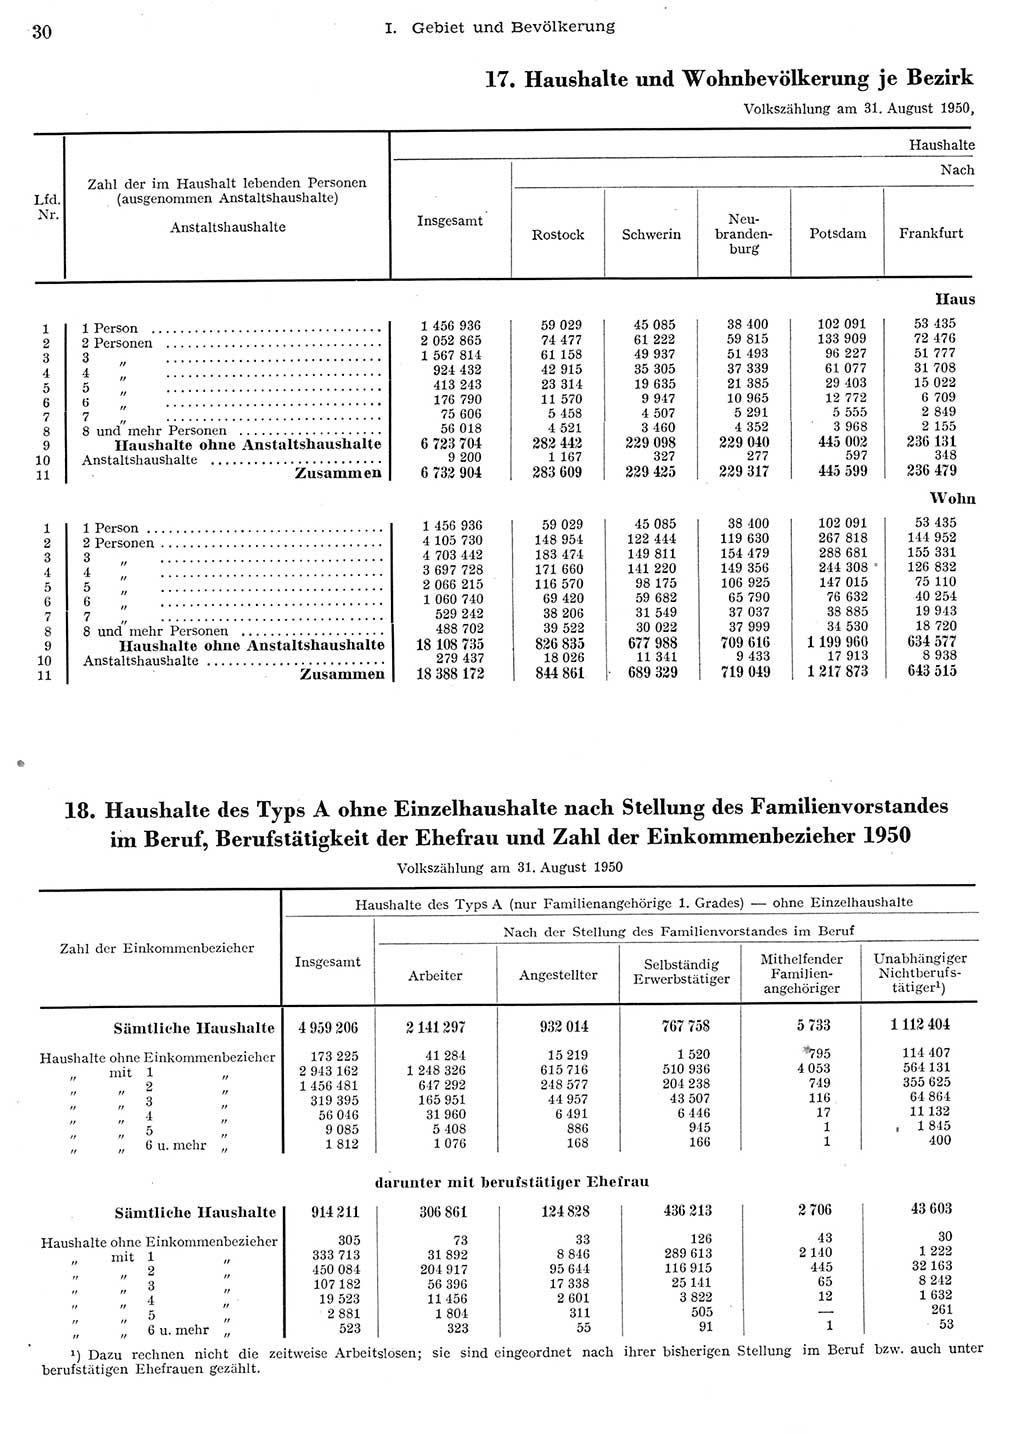 Statistisches Jahrbuch der Deutschen Demokratischen Republik (DDR) 1956, Seite 30 (Stat. Jb. DDR 1956, S. 30)